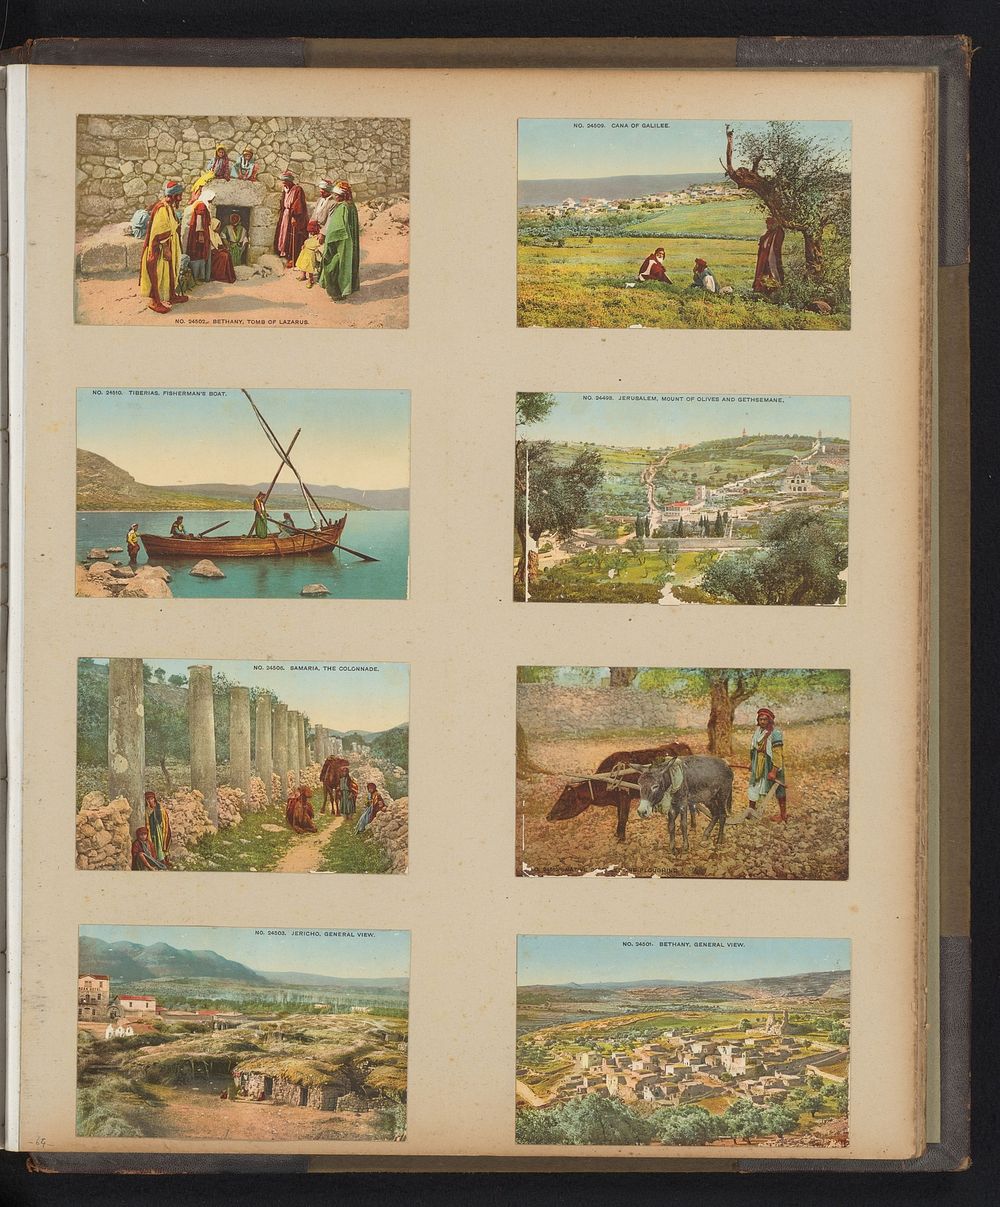 Acht prentbriefkaarten met gezichten op Jeruzalem, Bethanië, Samaria, Tiberias en Jericho (1871 - c. 1910) by anonymous